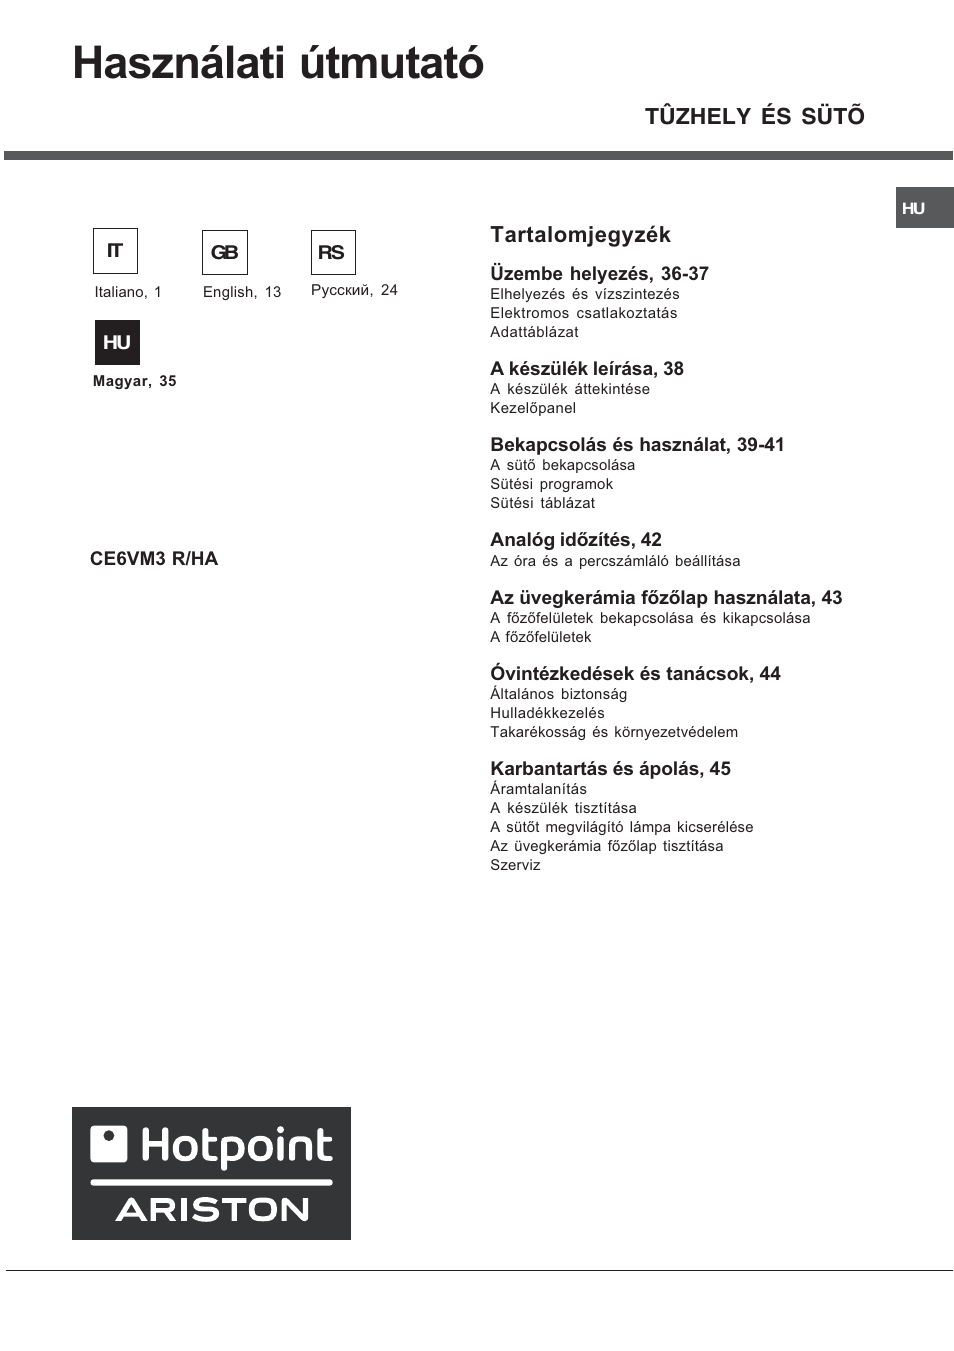 Használati útmutató, Tartalomjegyzék, Tûzhely és sütõ | Hotpoint Ariston CE  6V M3 R/HA User Manual | Page 35 / 48